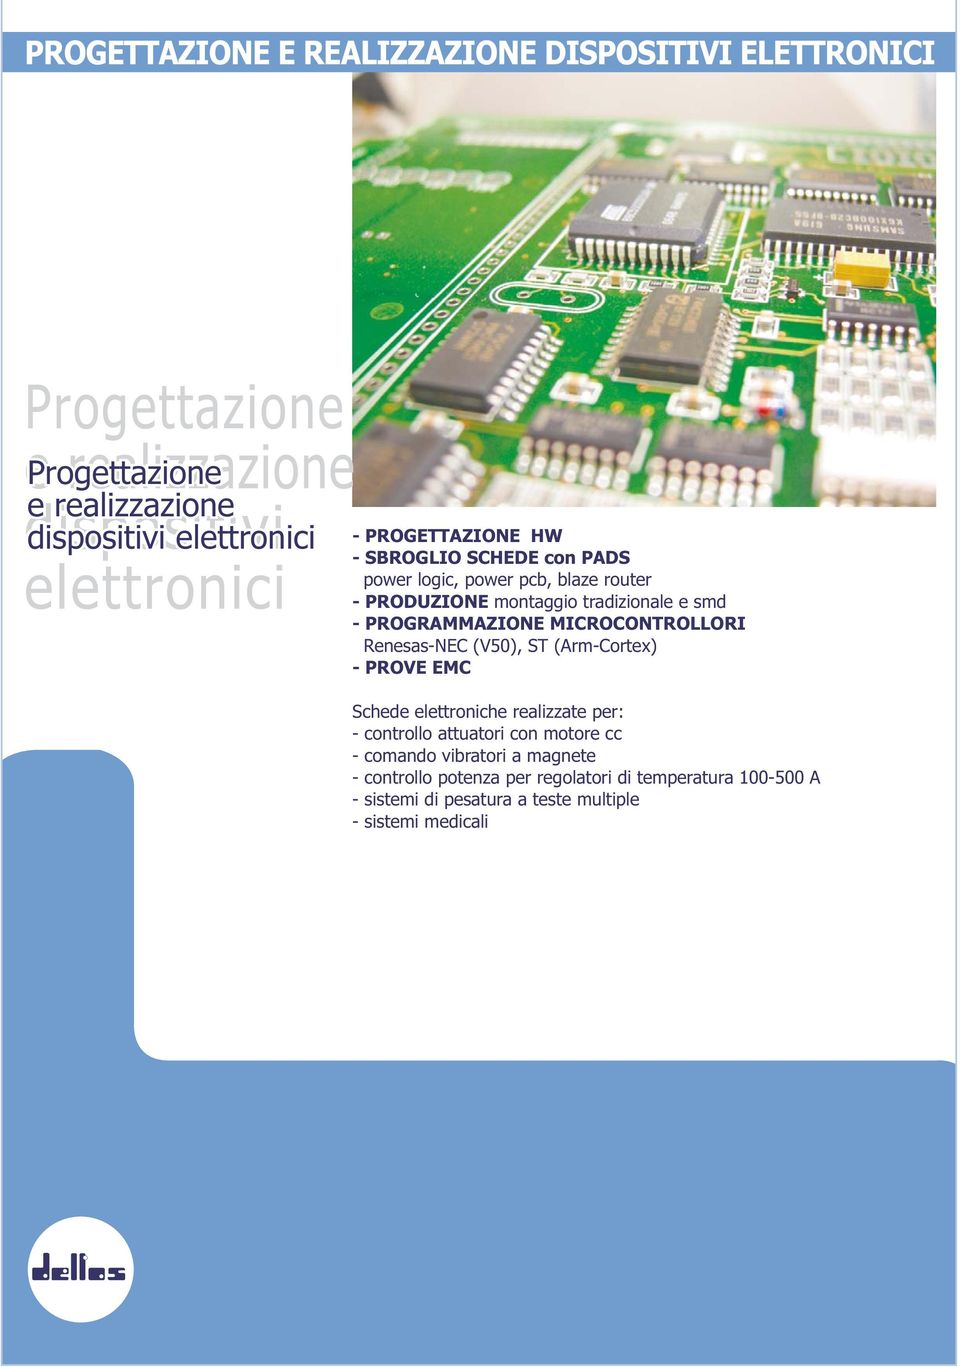 PROGRAMMAZIONE MICROCONTROLLORI Renesas-NEC (V50), ST (Arm-Cortex) - PROVE EMC Schede elettroniche realizzate per: - controllo attuatori con